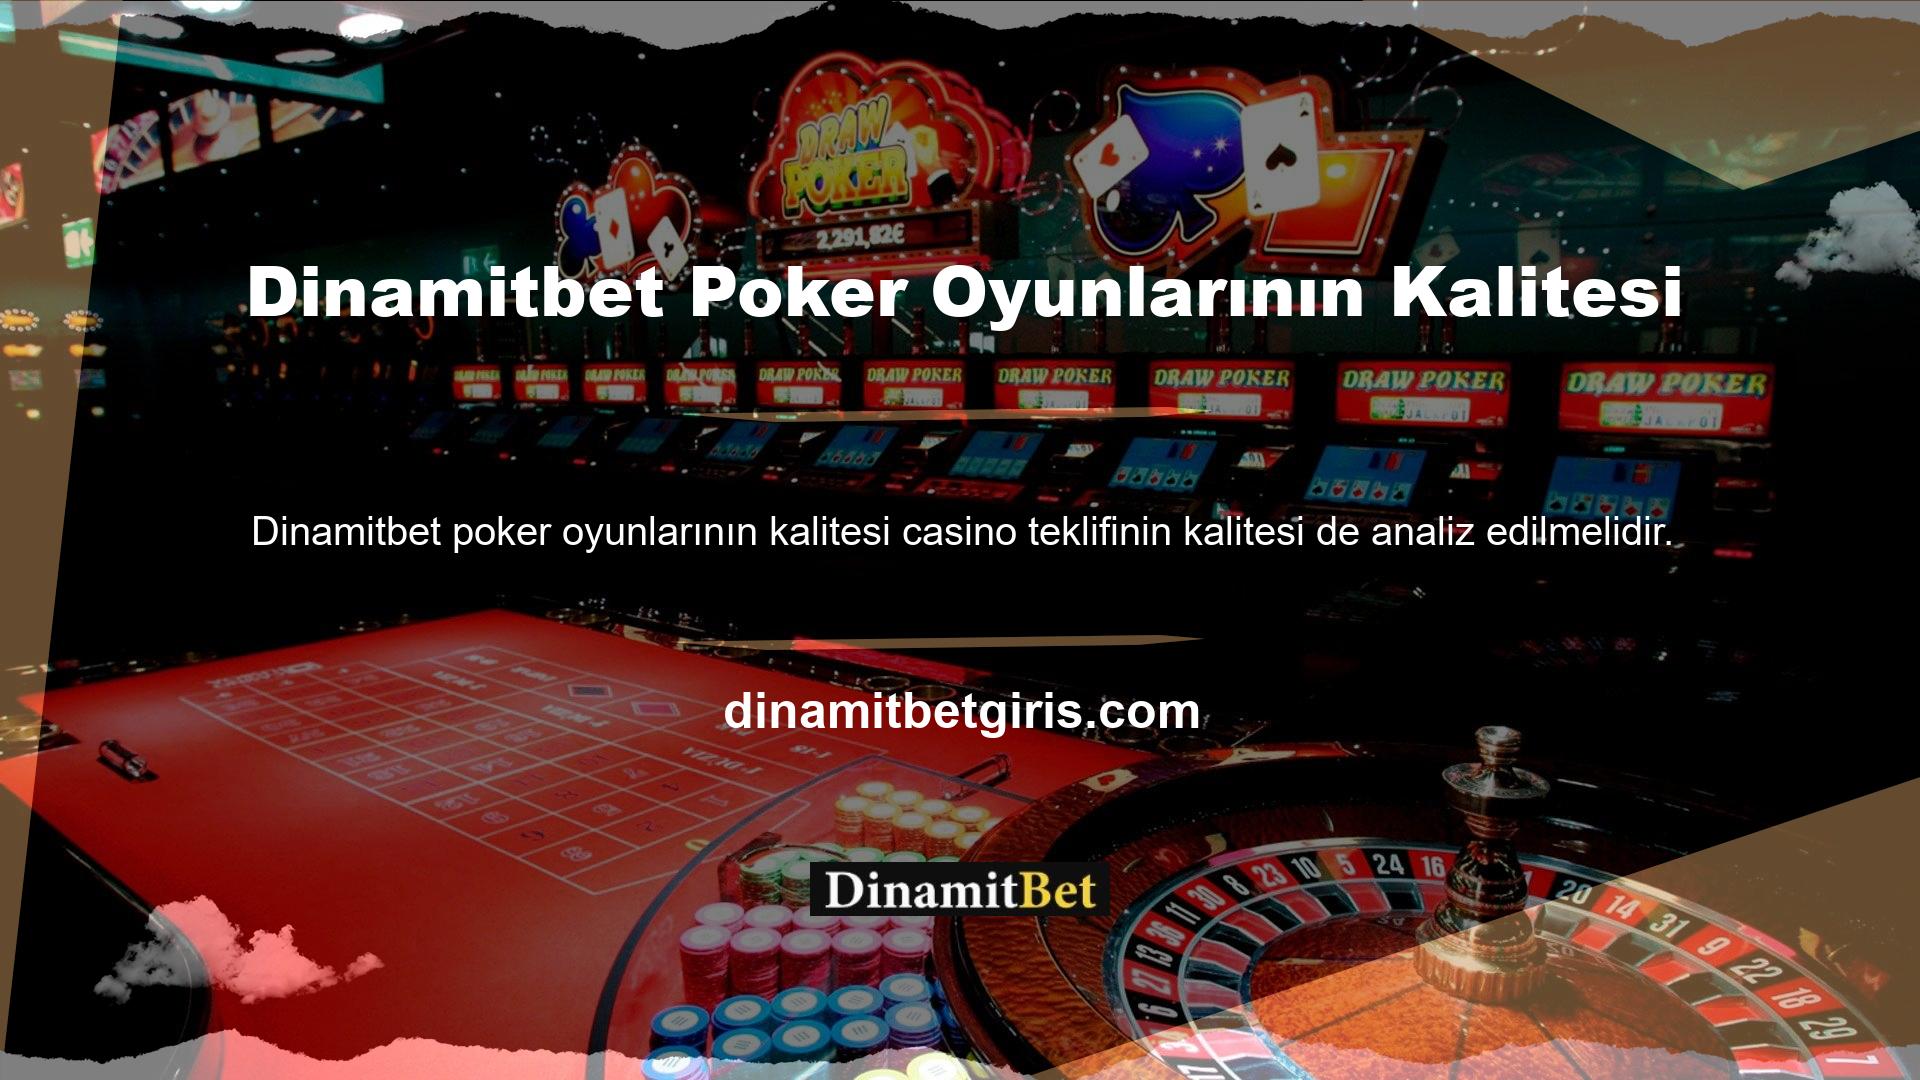 Dinamitbet Poker Oyunlarının Kalitesi Bu bağlamda poker oyunlarının nasıl derecelendirildiğine bakarak temel bir analiz yapılabilir